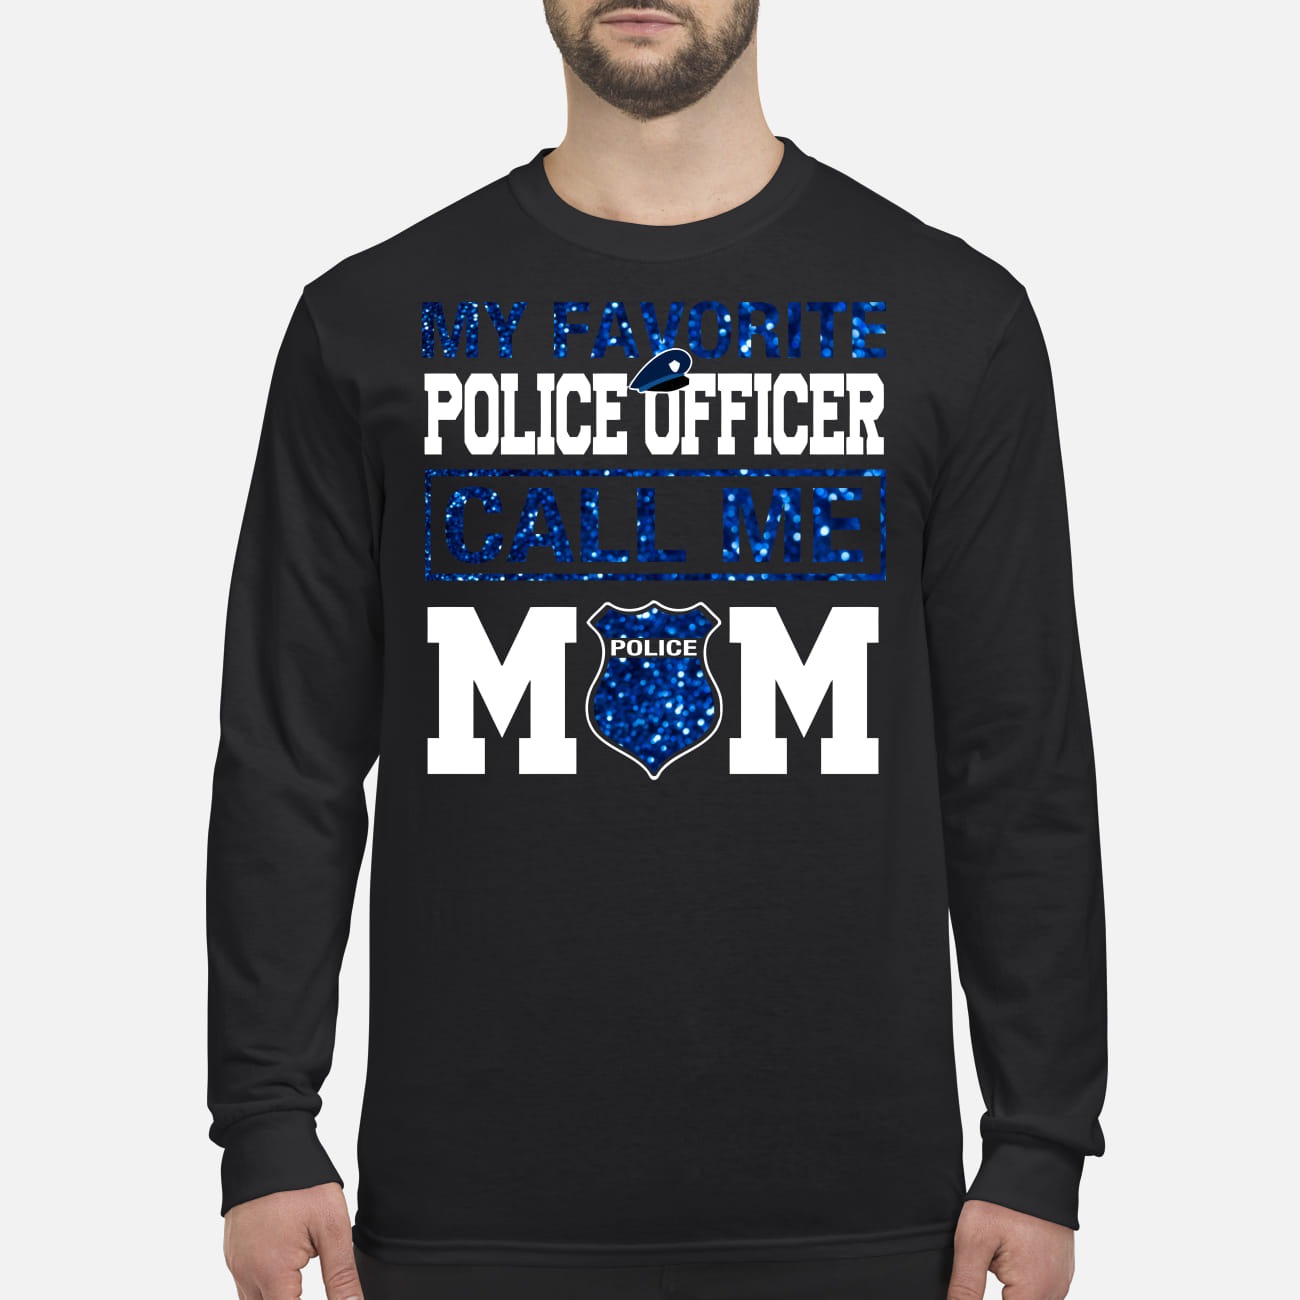 My favorite officer call me mom men's long sleeved shirt